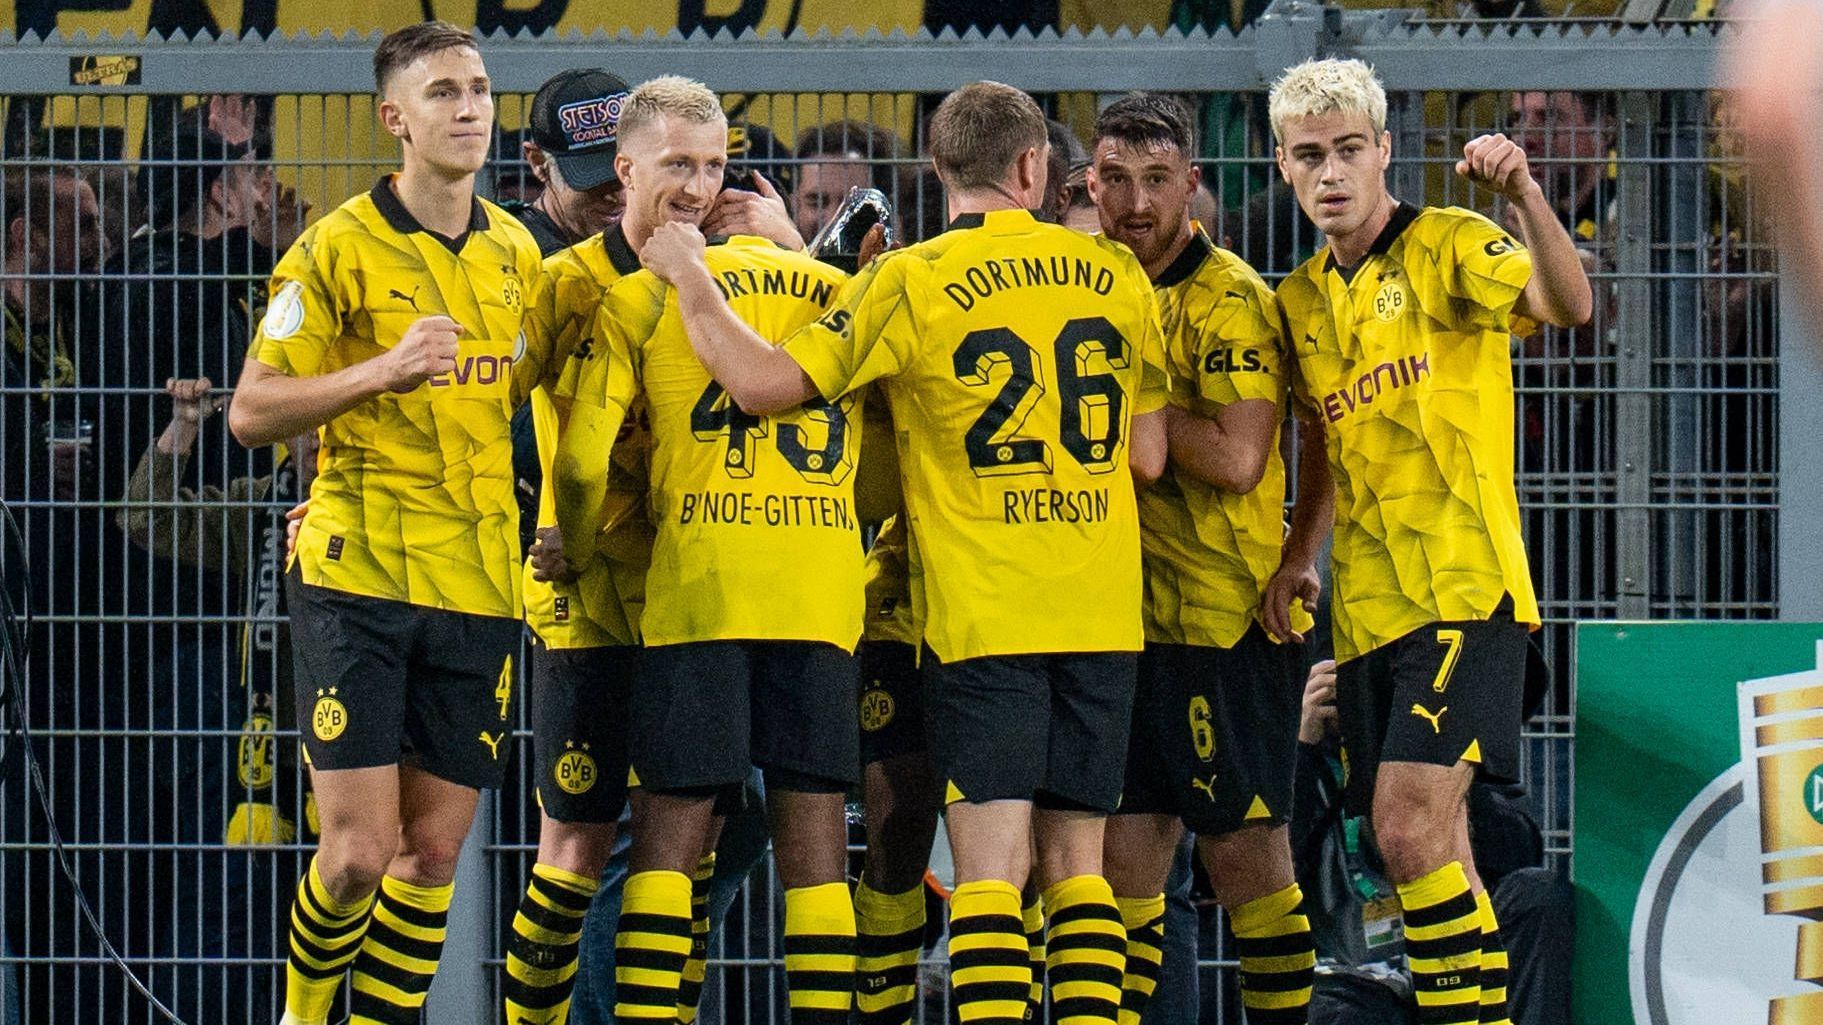 <strong>Einzelkritik: Die Noten der BVB-Stars gegen Hoffenheim</strong><br>Borussia Dortmund kommt in der 2. Runde des DFB-Pokals zu einem knappen, aber souveränen Sieg gegen Hoffenheim.&nbsp;<strong><em>ran</em></strong> hat die BVB-Stars benotet.